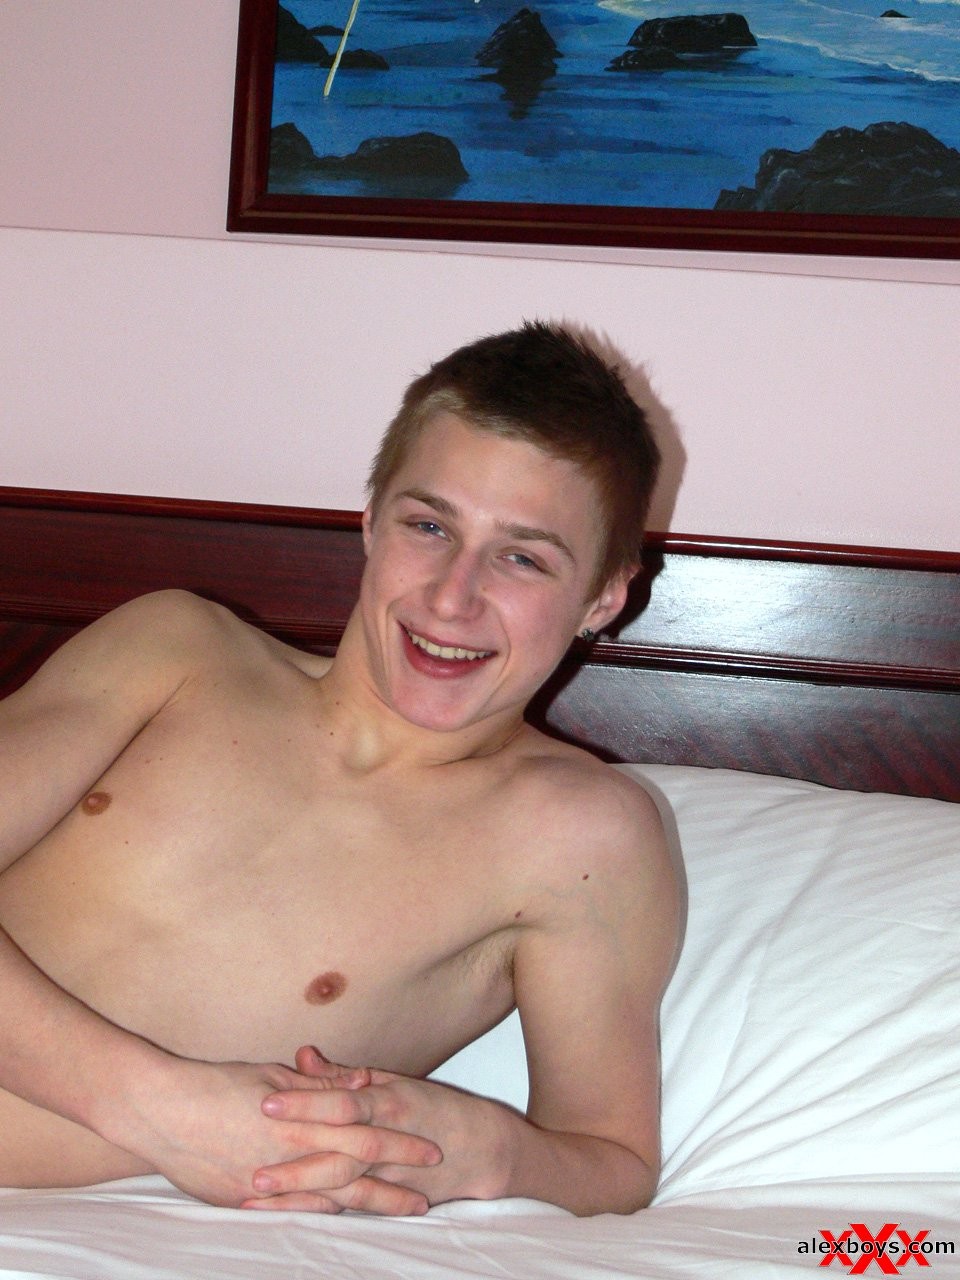 Cute shy gay teen boy #76935538